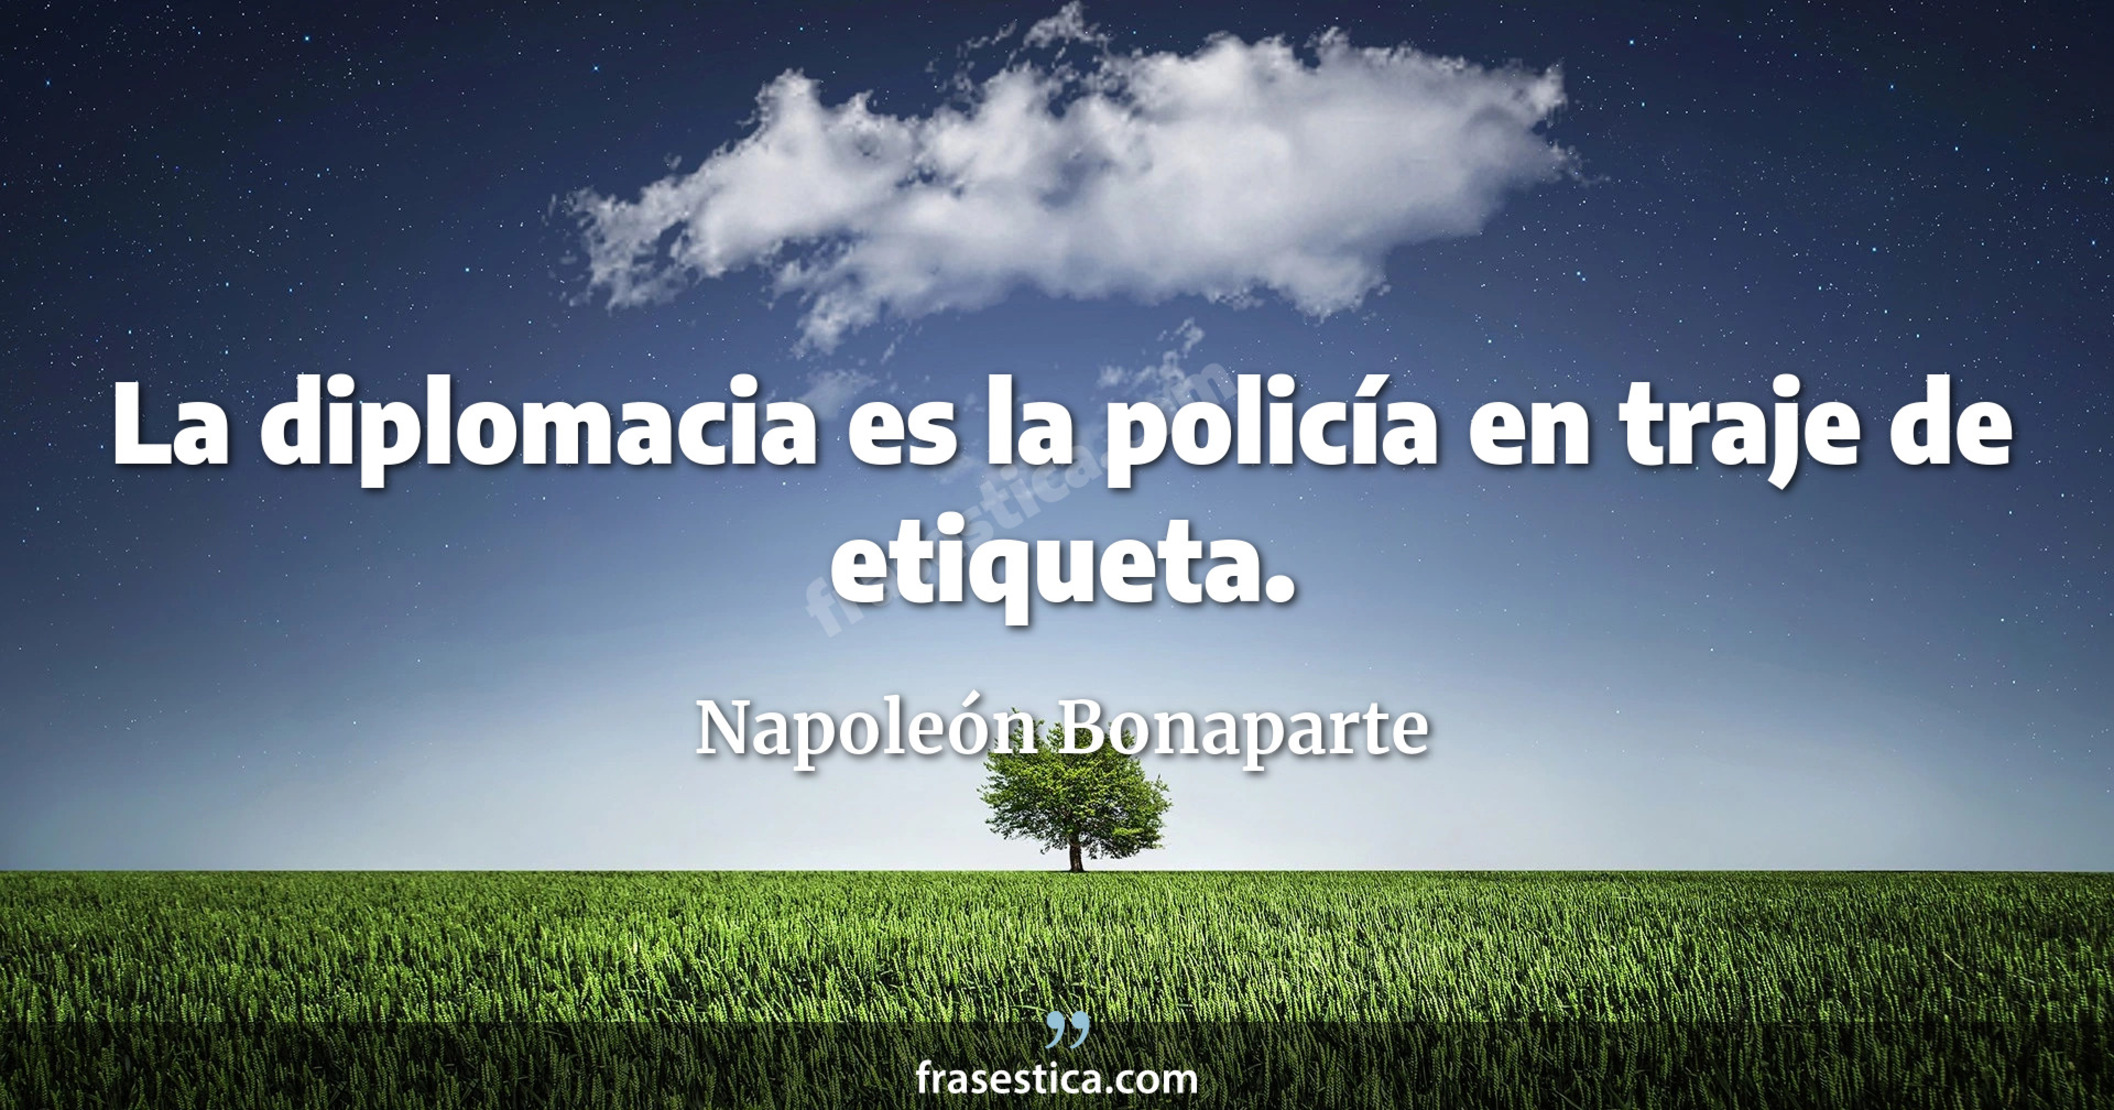 La diplomacia es la policía en traje de etiqueta. - Napoleón Bonaparte